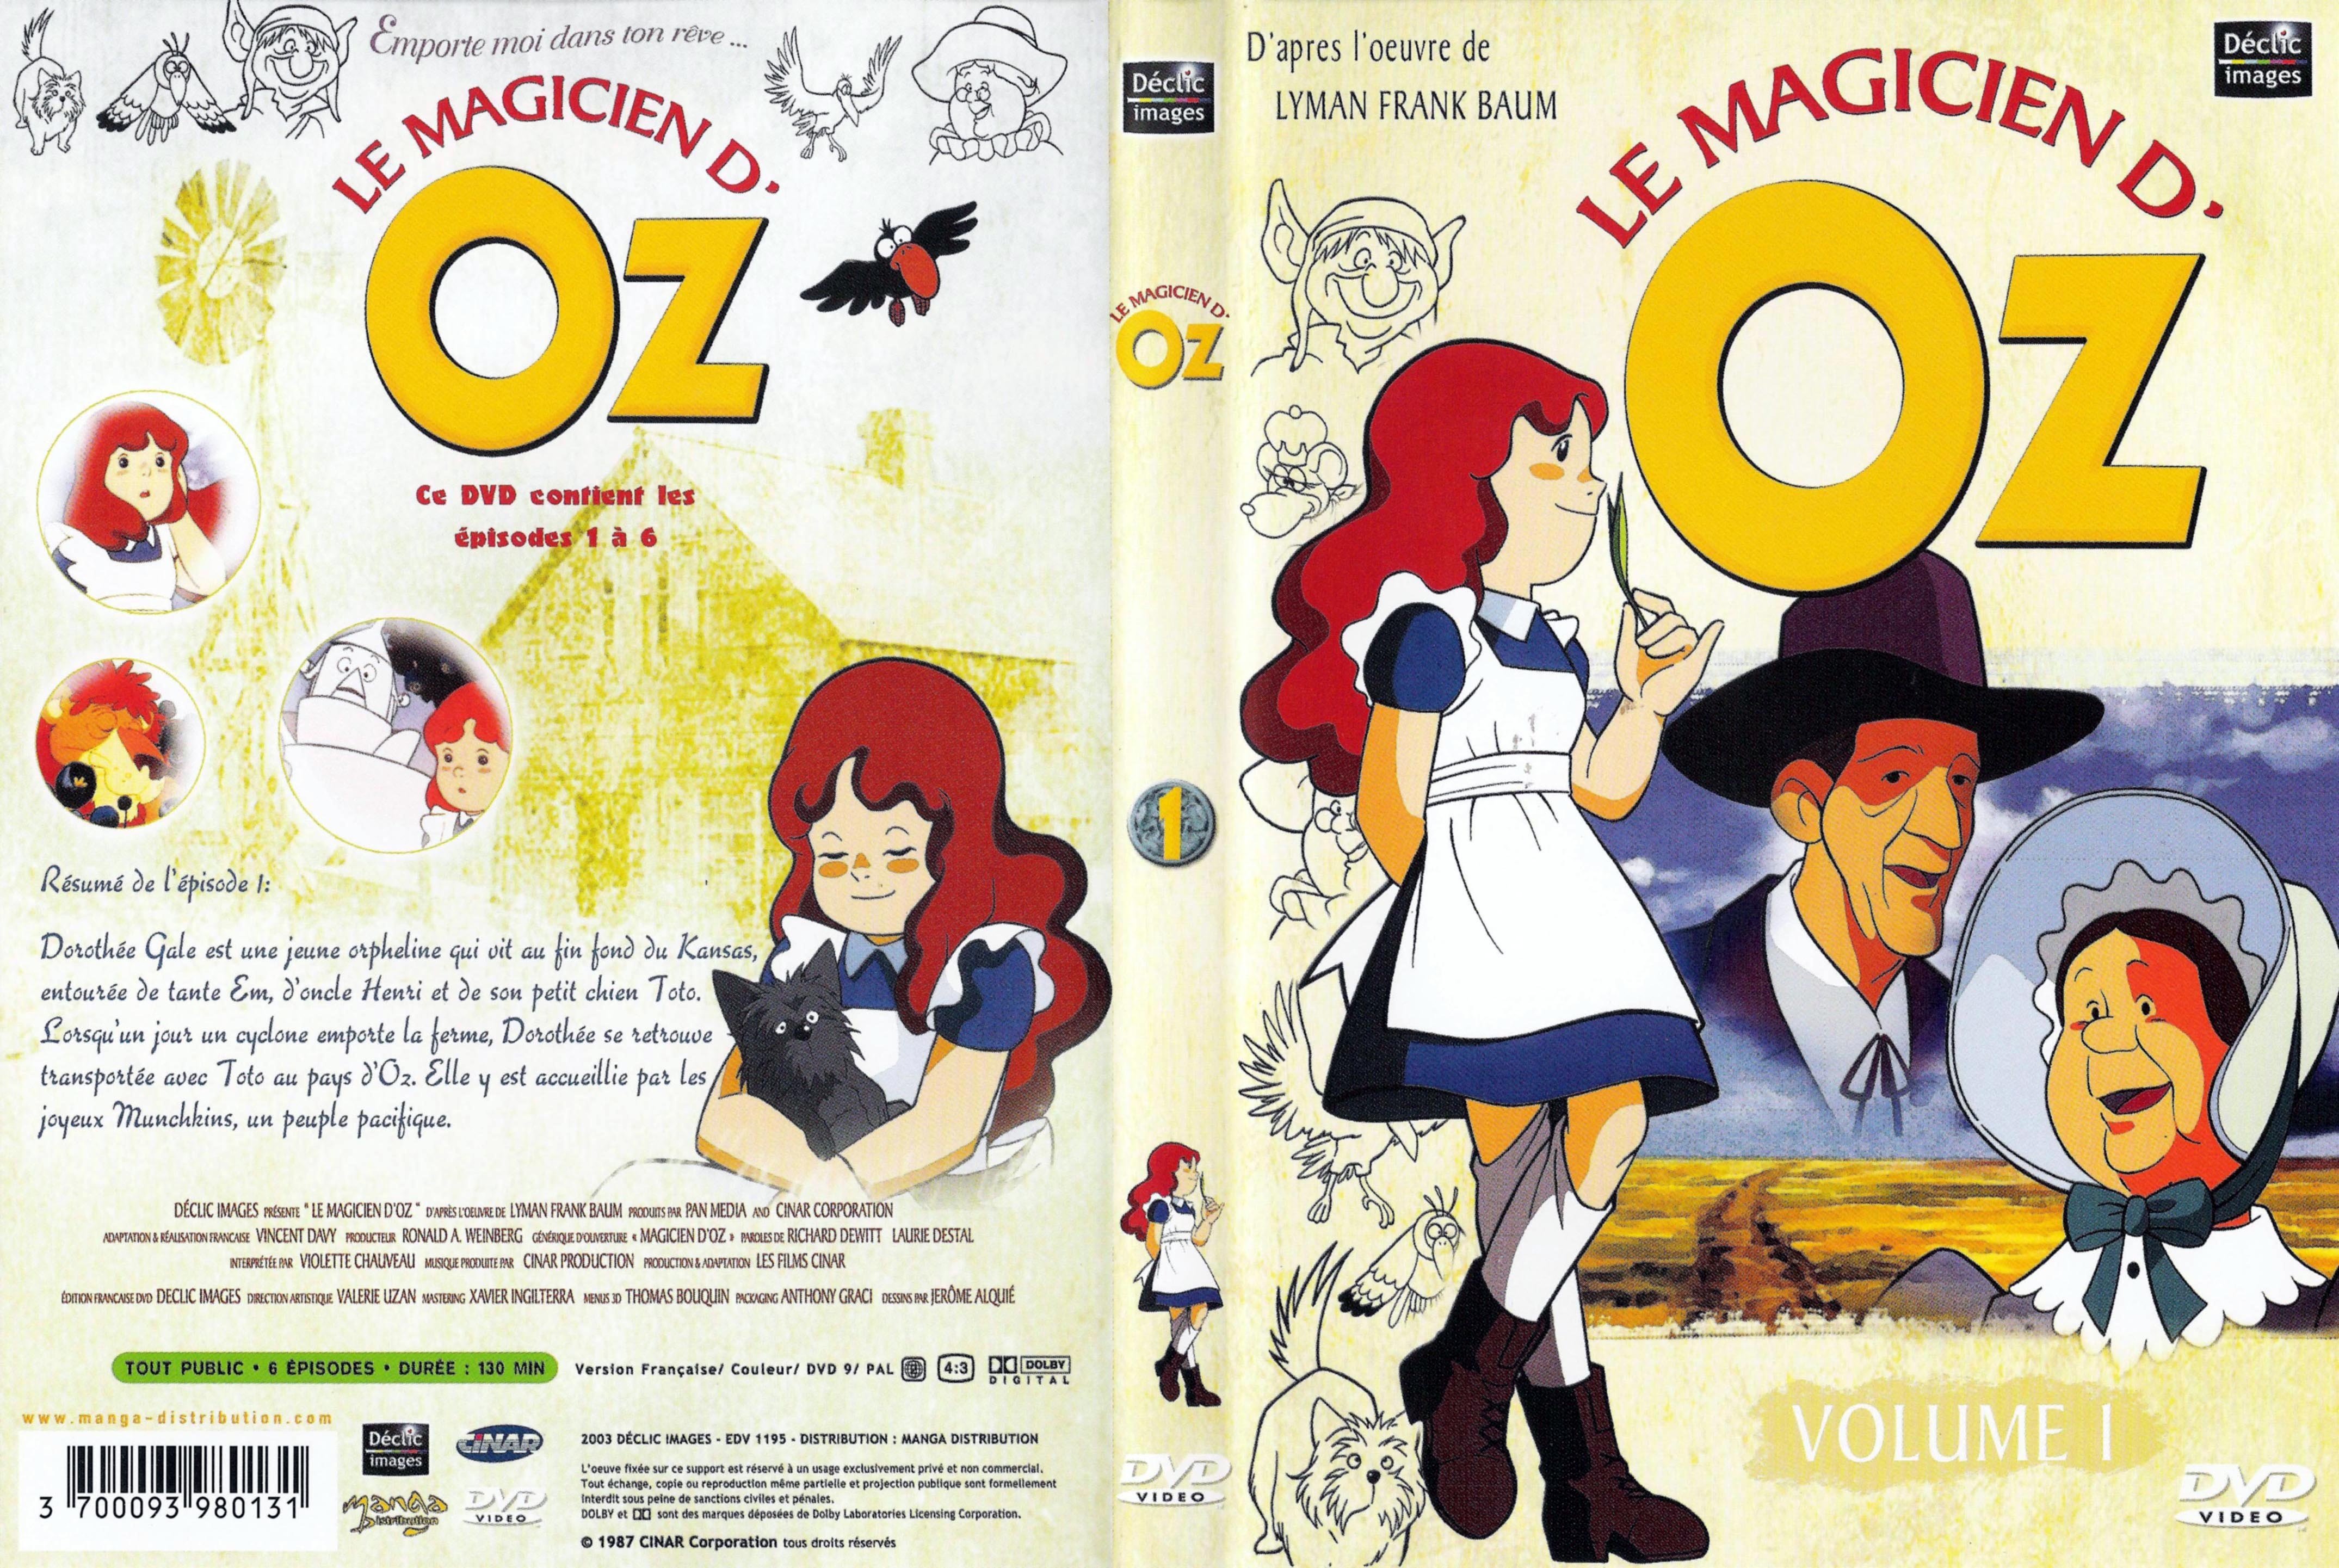 Jaquette DVD Le magicien d